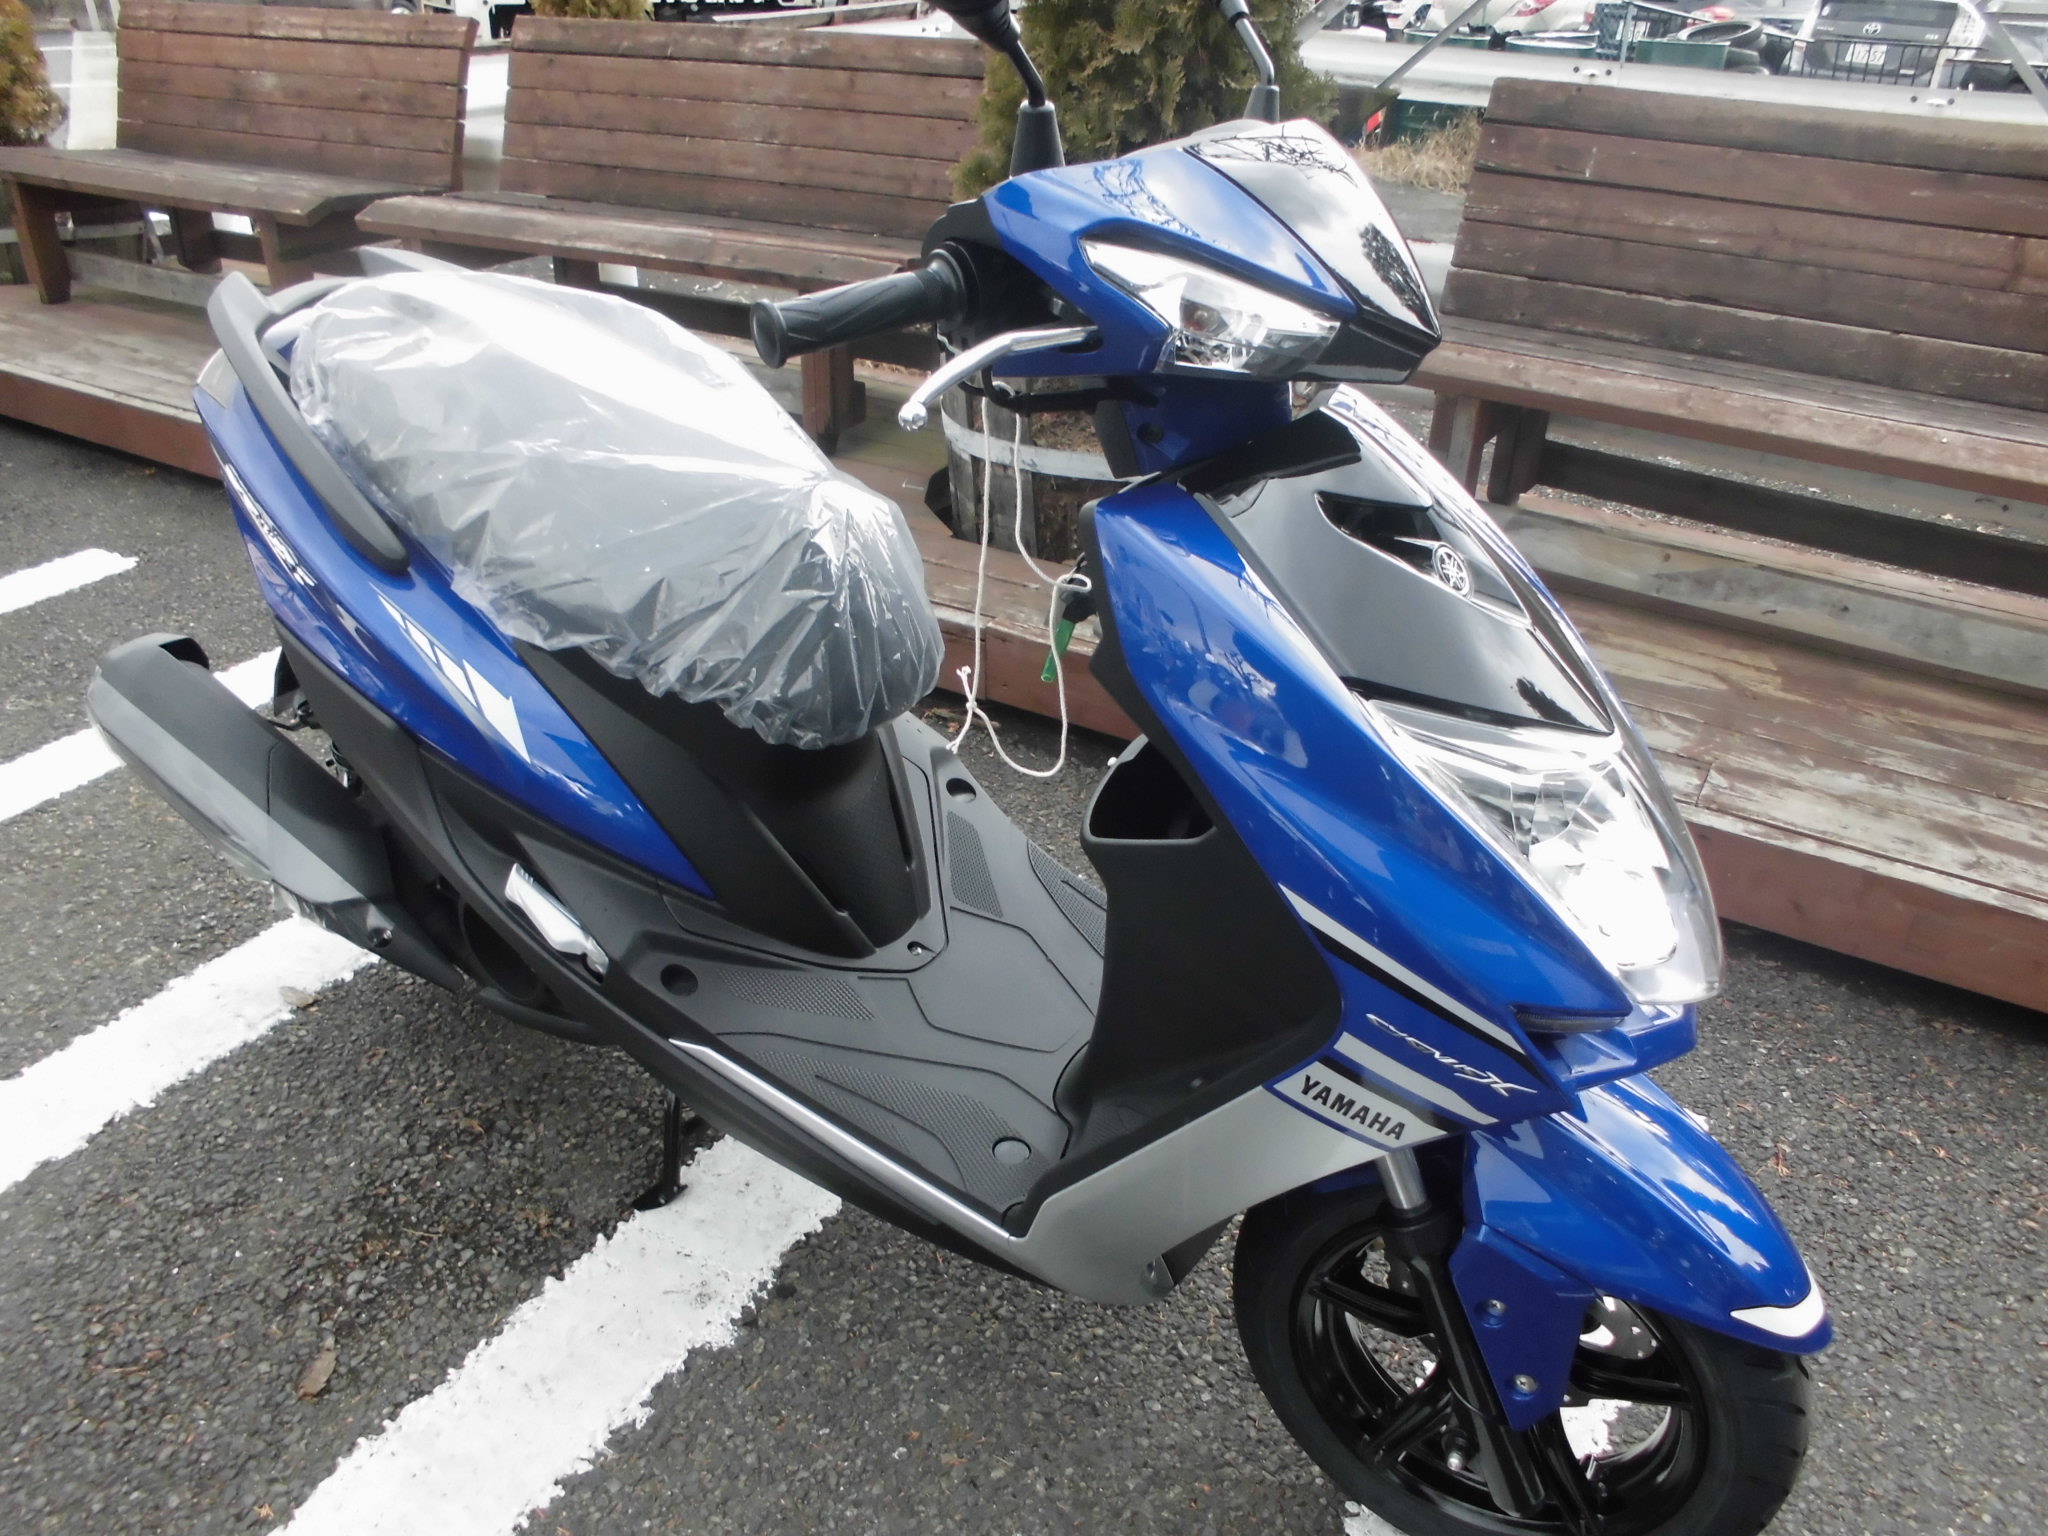 シグナスxsr限定車入庫しました 明日明後日はhd中古車商談会です 最新情報 U Media ユーメディア 中古 バイク 新車バイク探しの決定版 神奈川 東京でバイク探すならユーメディア